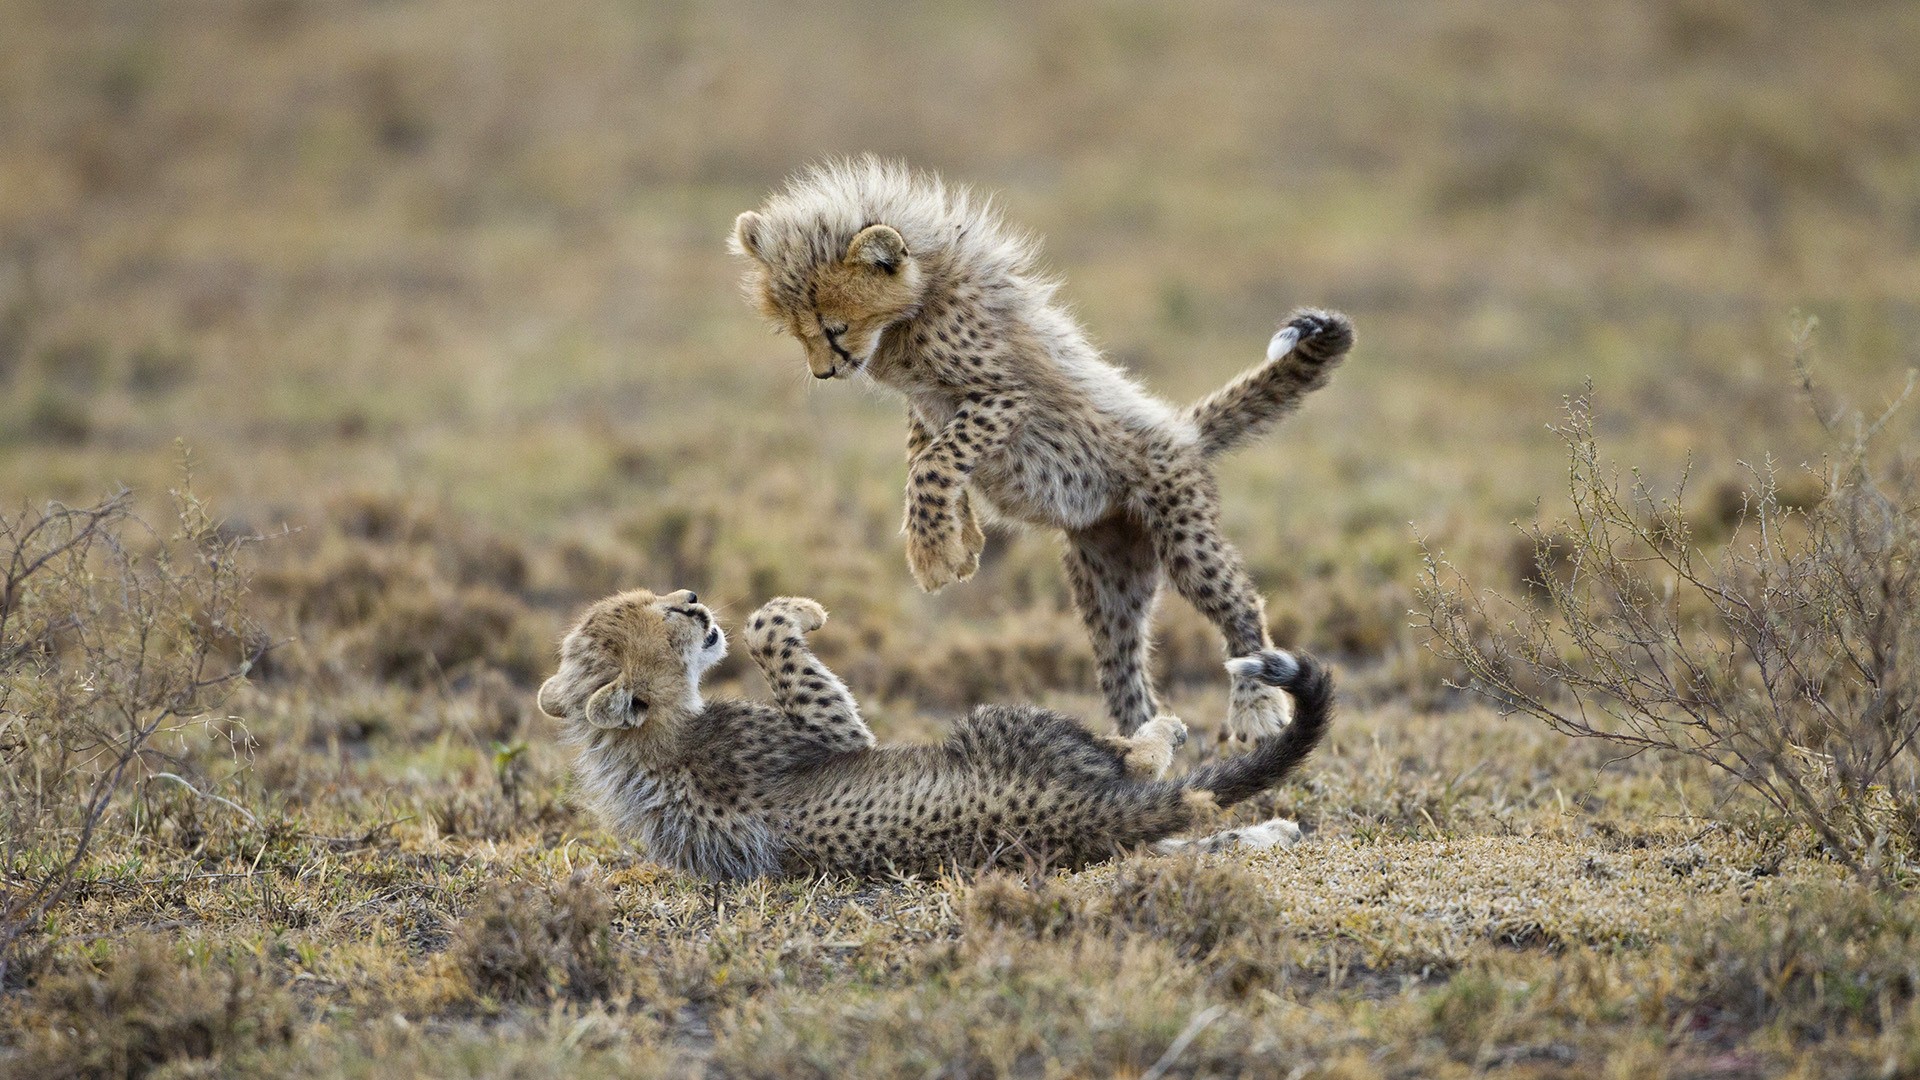 Cheetah Tackle